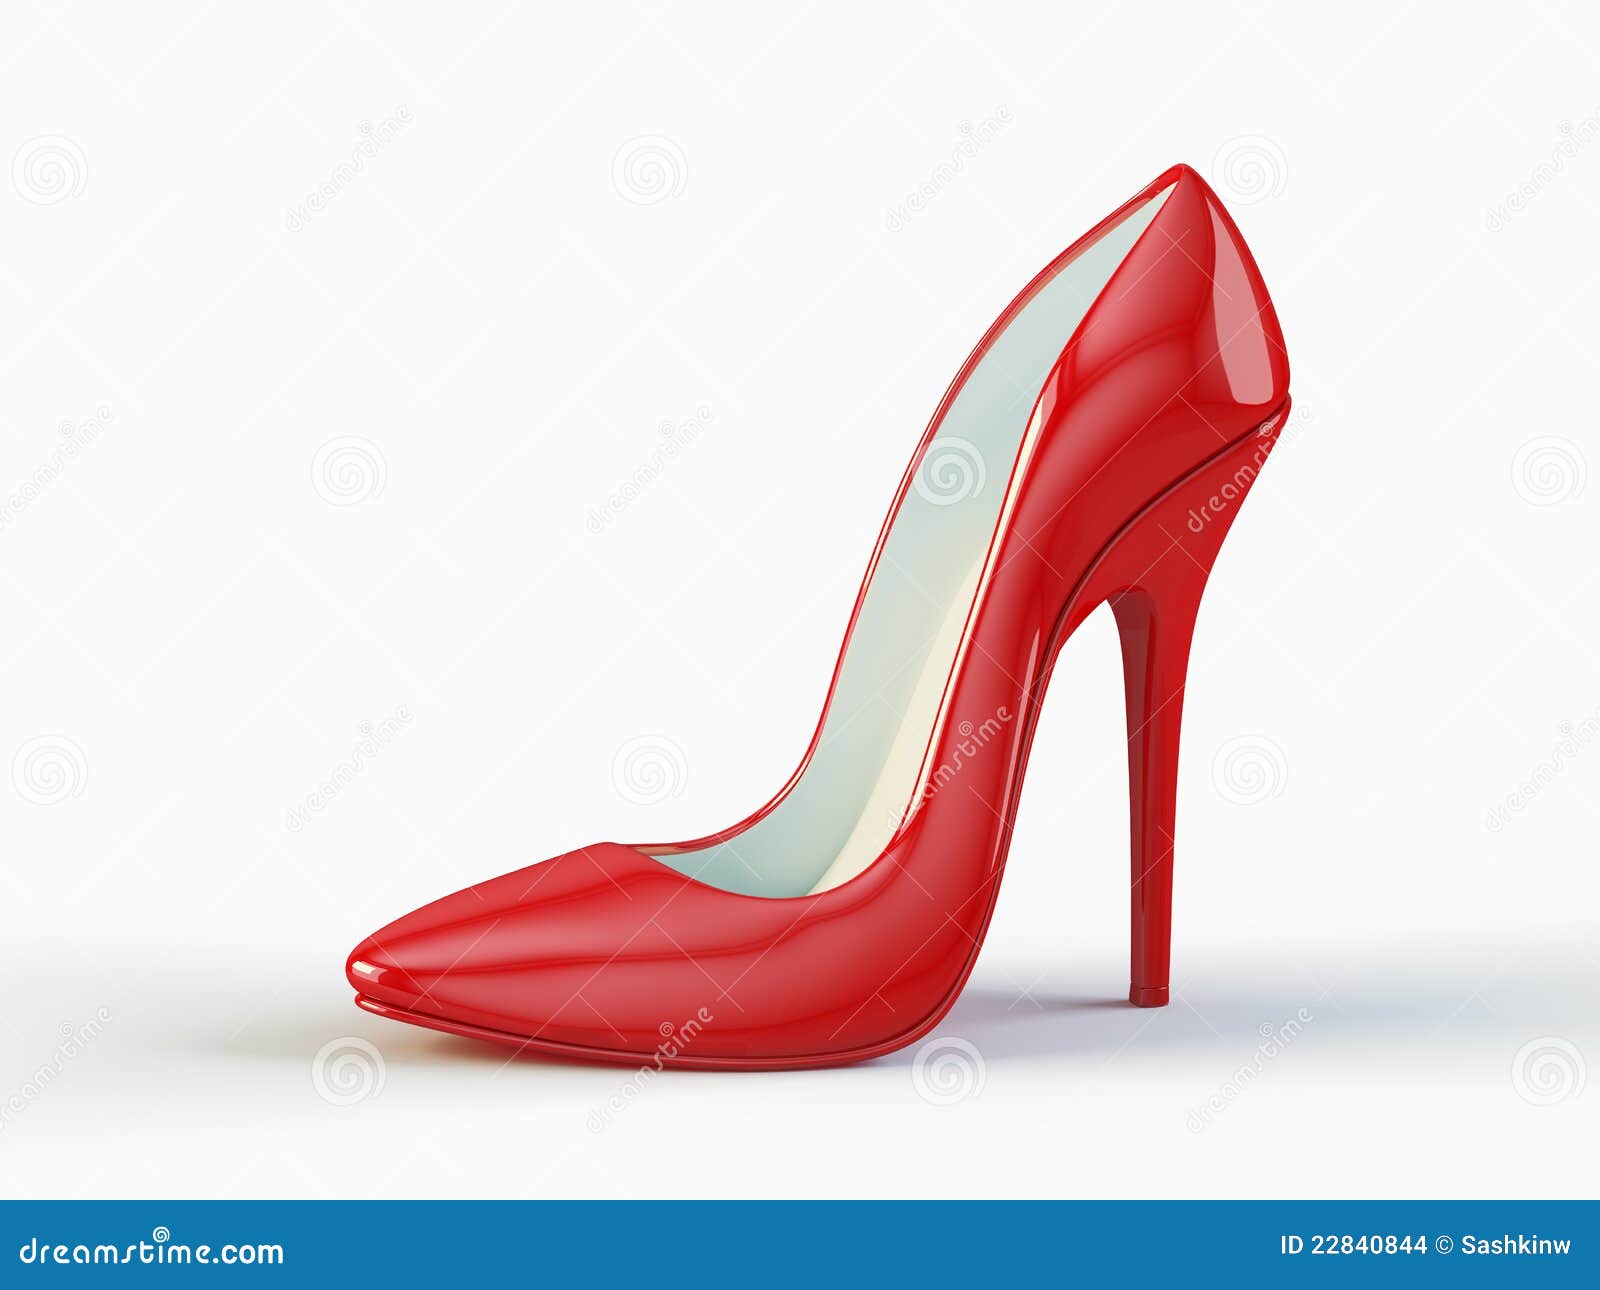 Chaussure Rouge De Haut Talon Images stock - Image: 22840844